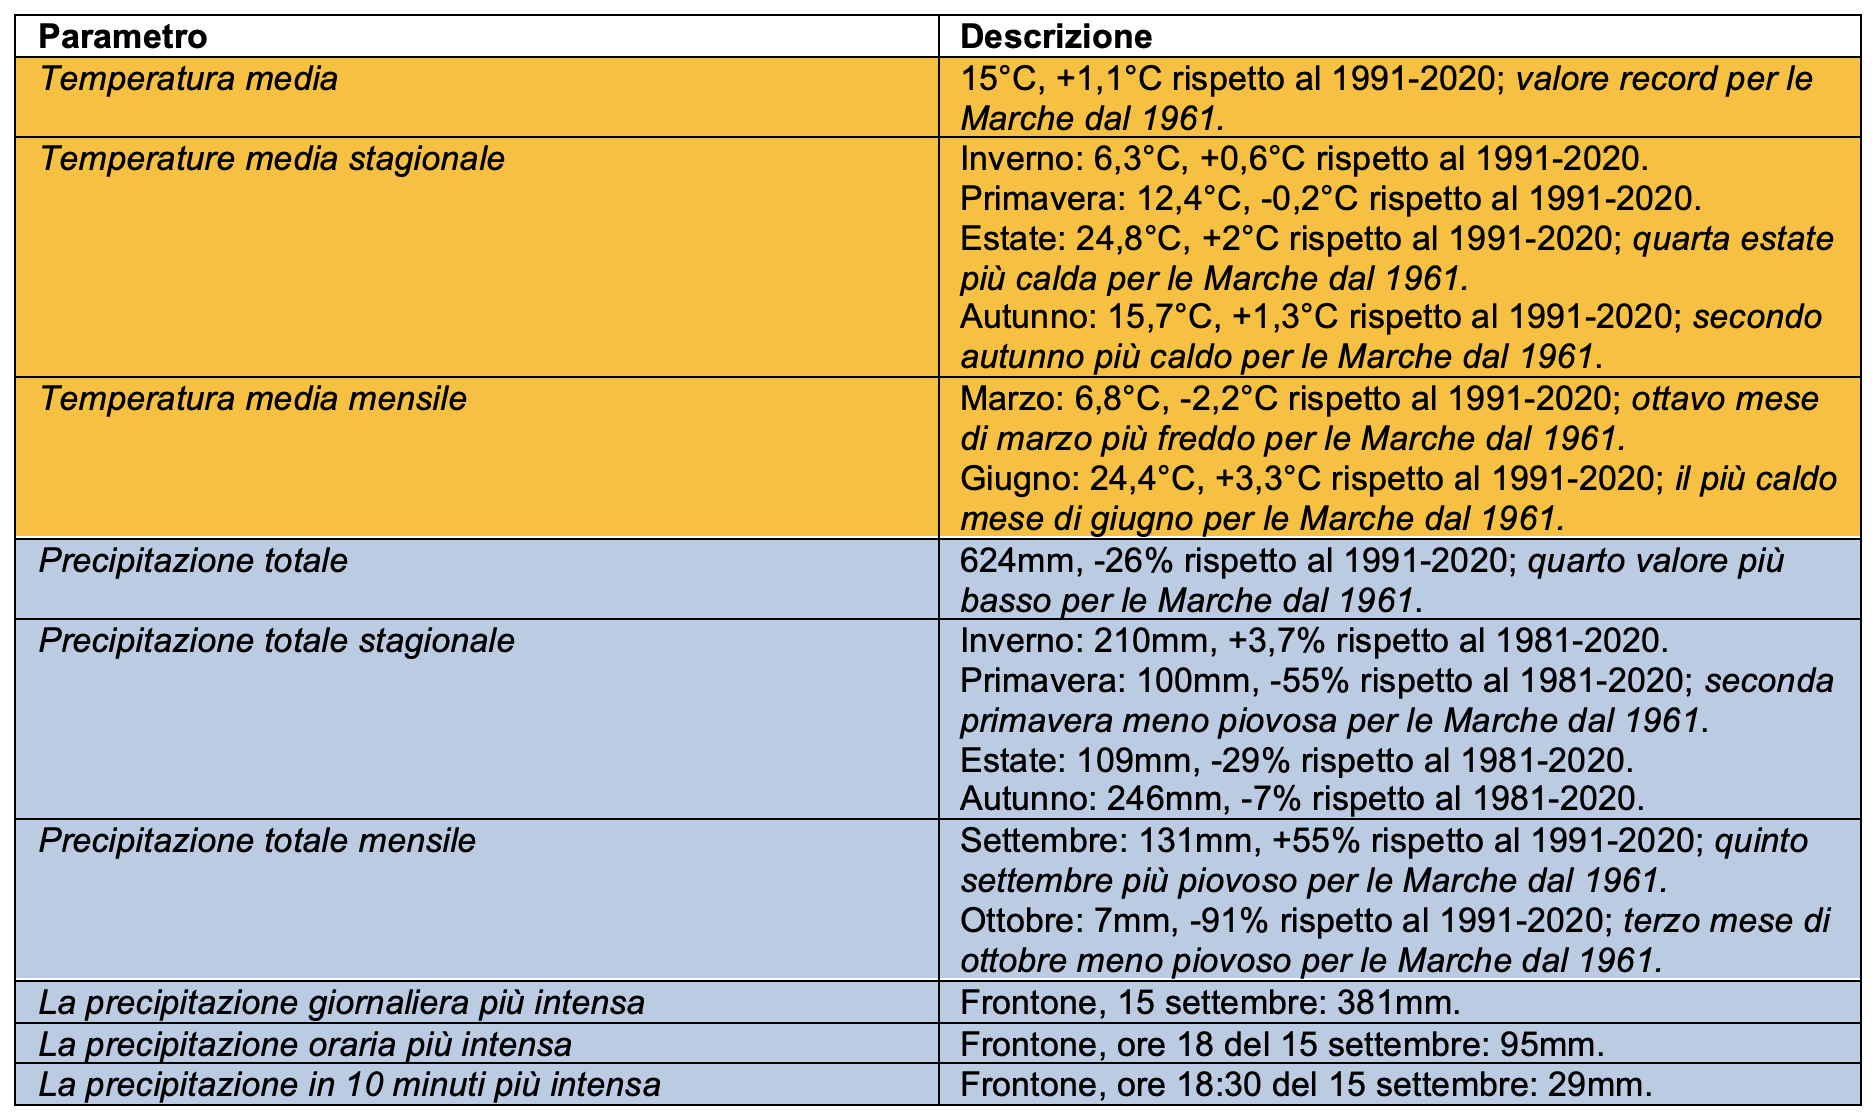 Meteo AMAP Regione Marche - tabella riepilogo clima